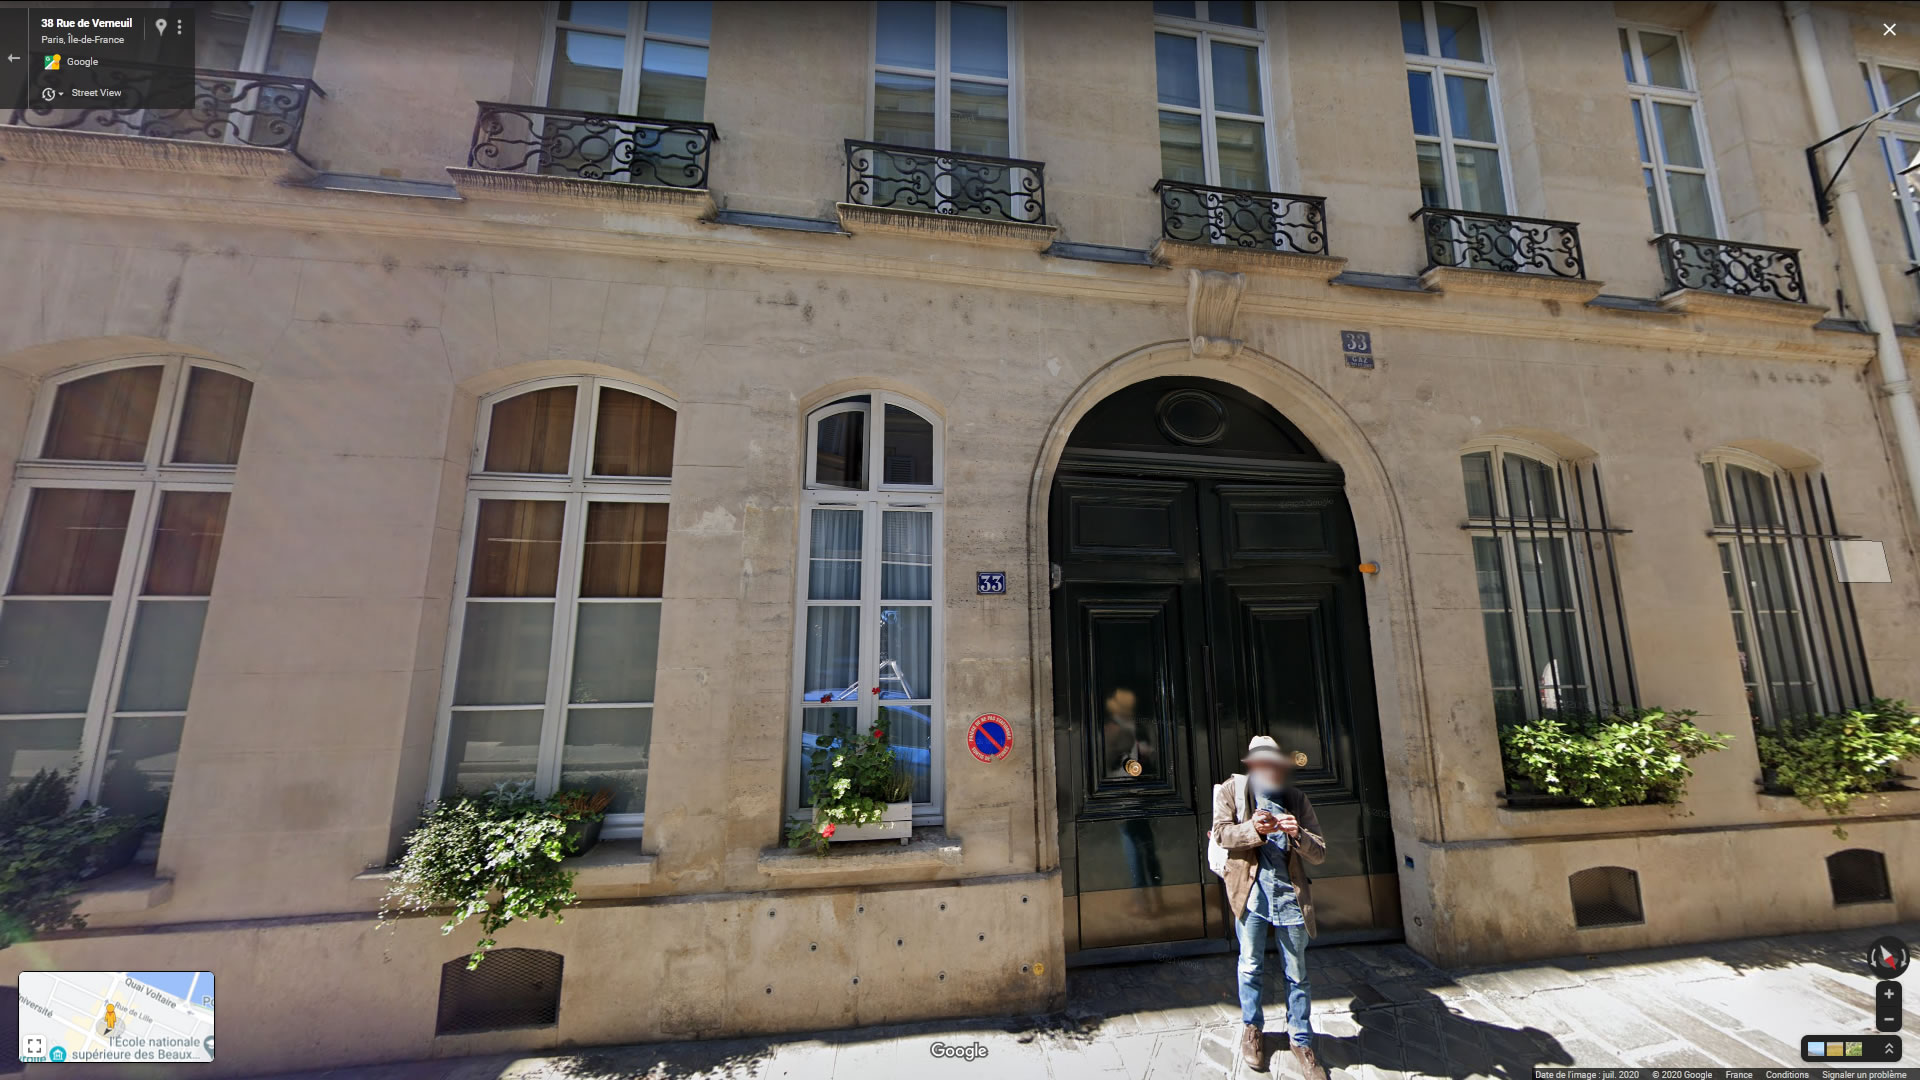 Logement1851 -  33 rue de Verneuil, ParisÉdouard de Silvestre. 